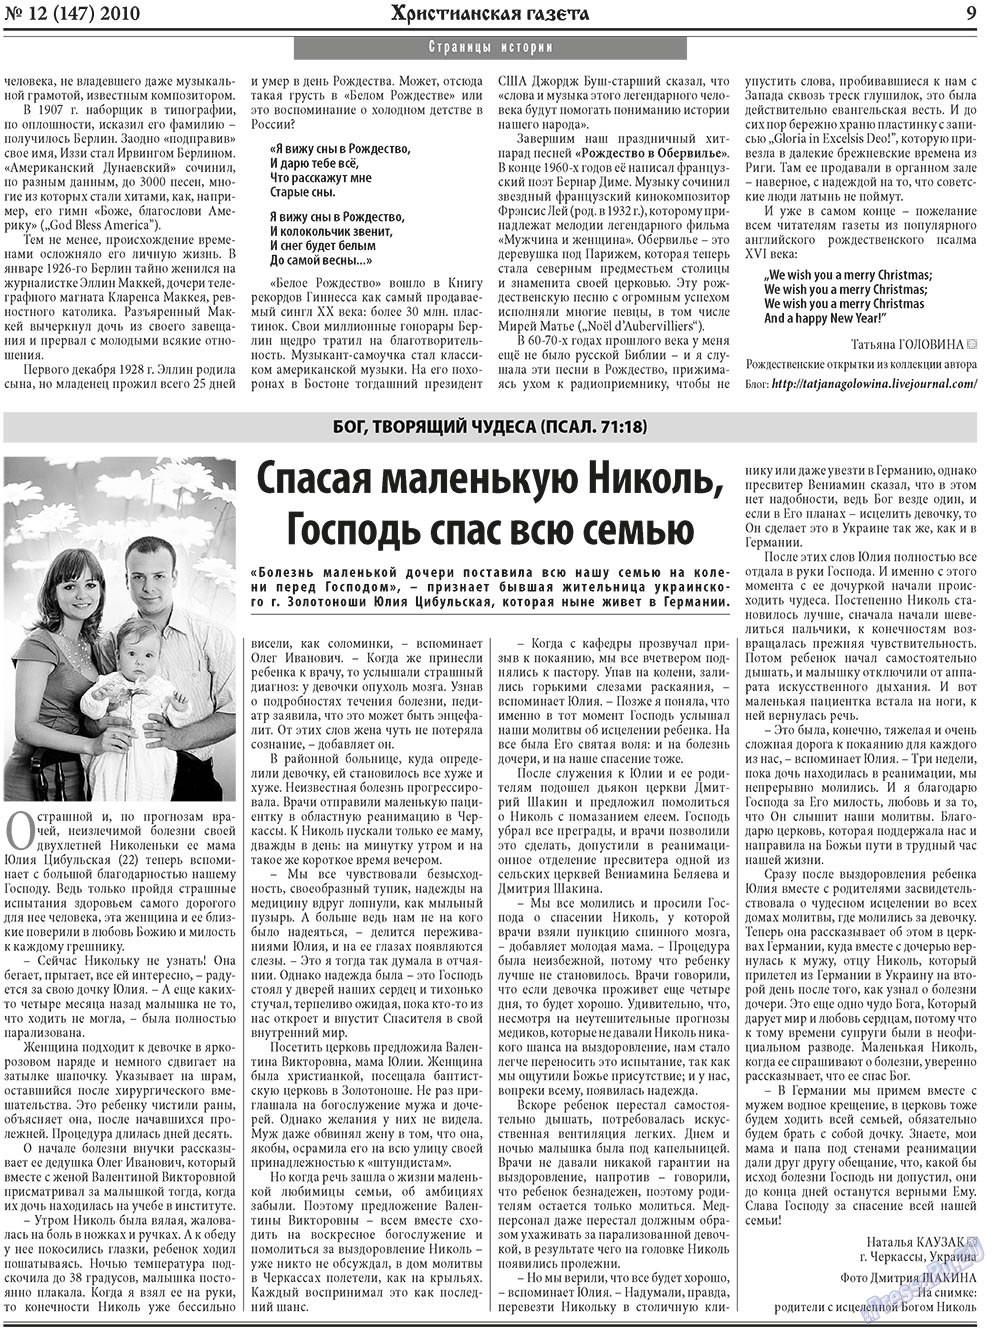 Христианская газета, газета. 2010 №12 стр.9